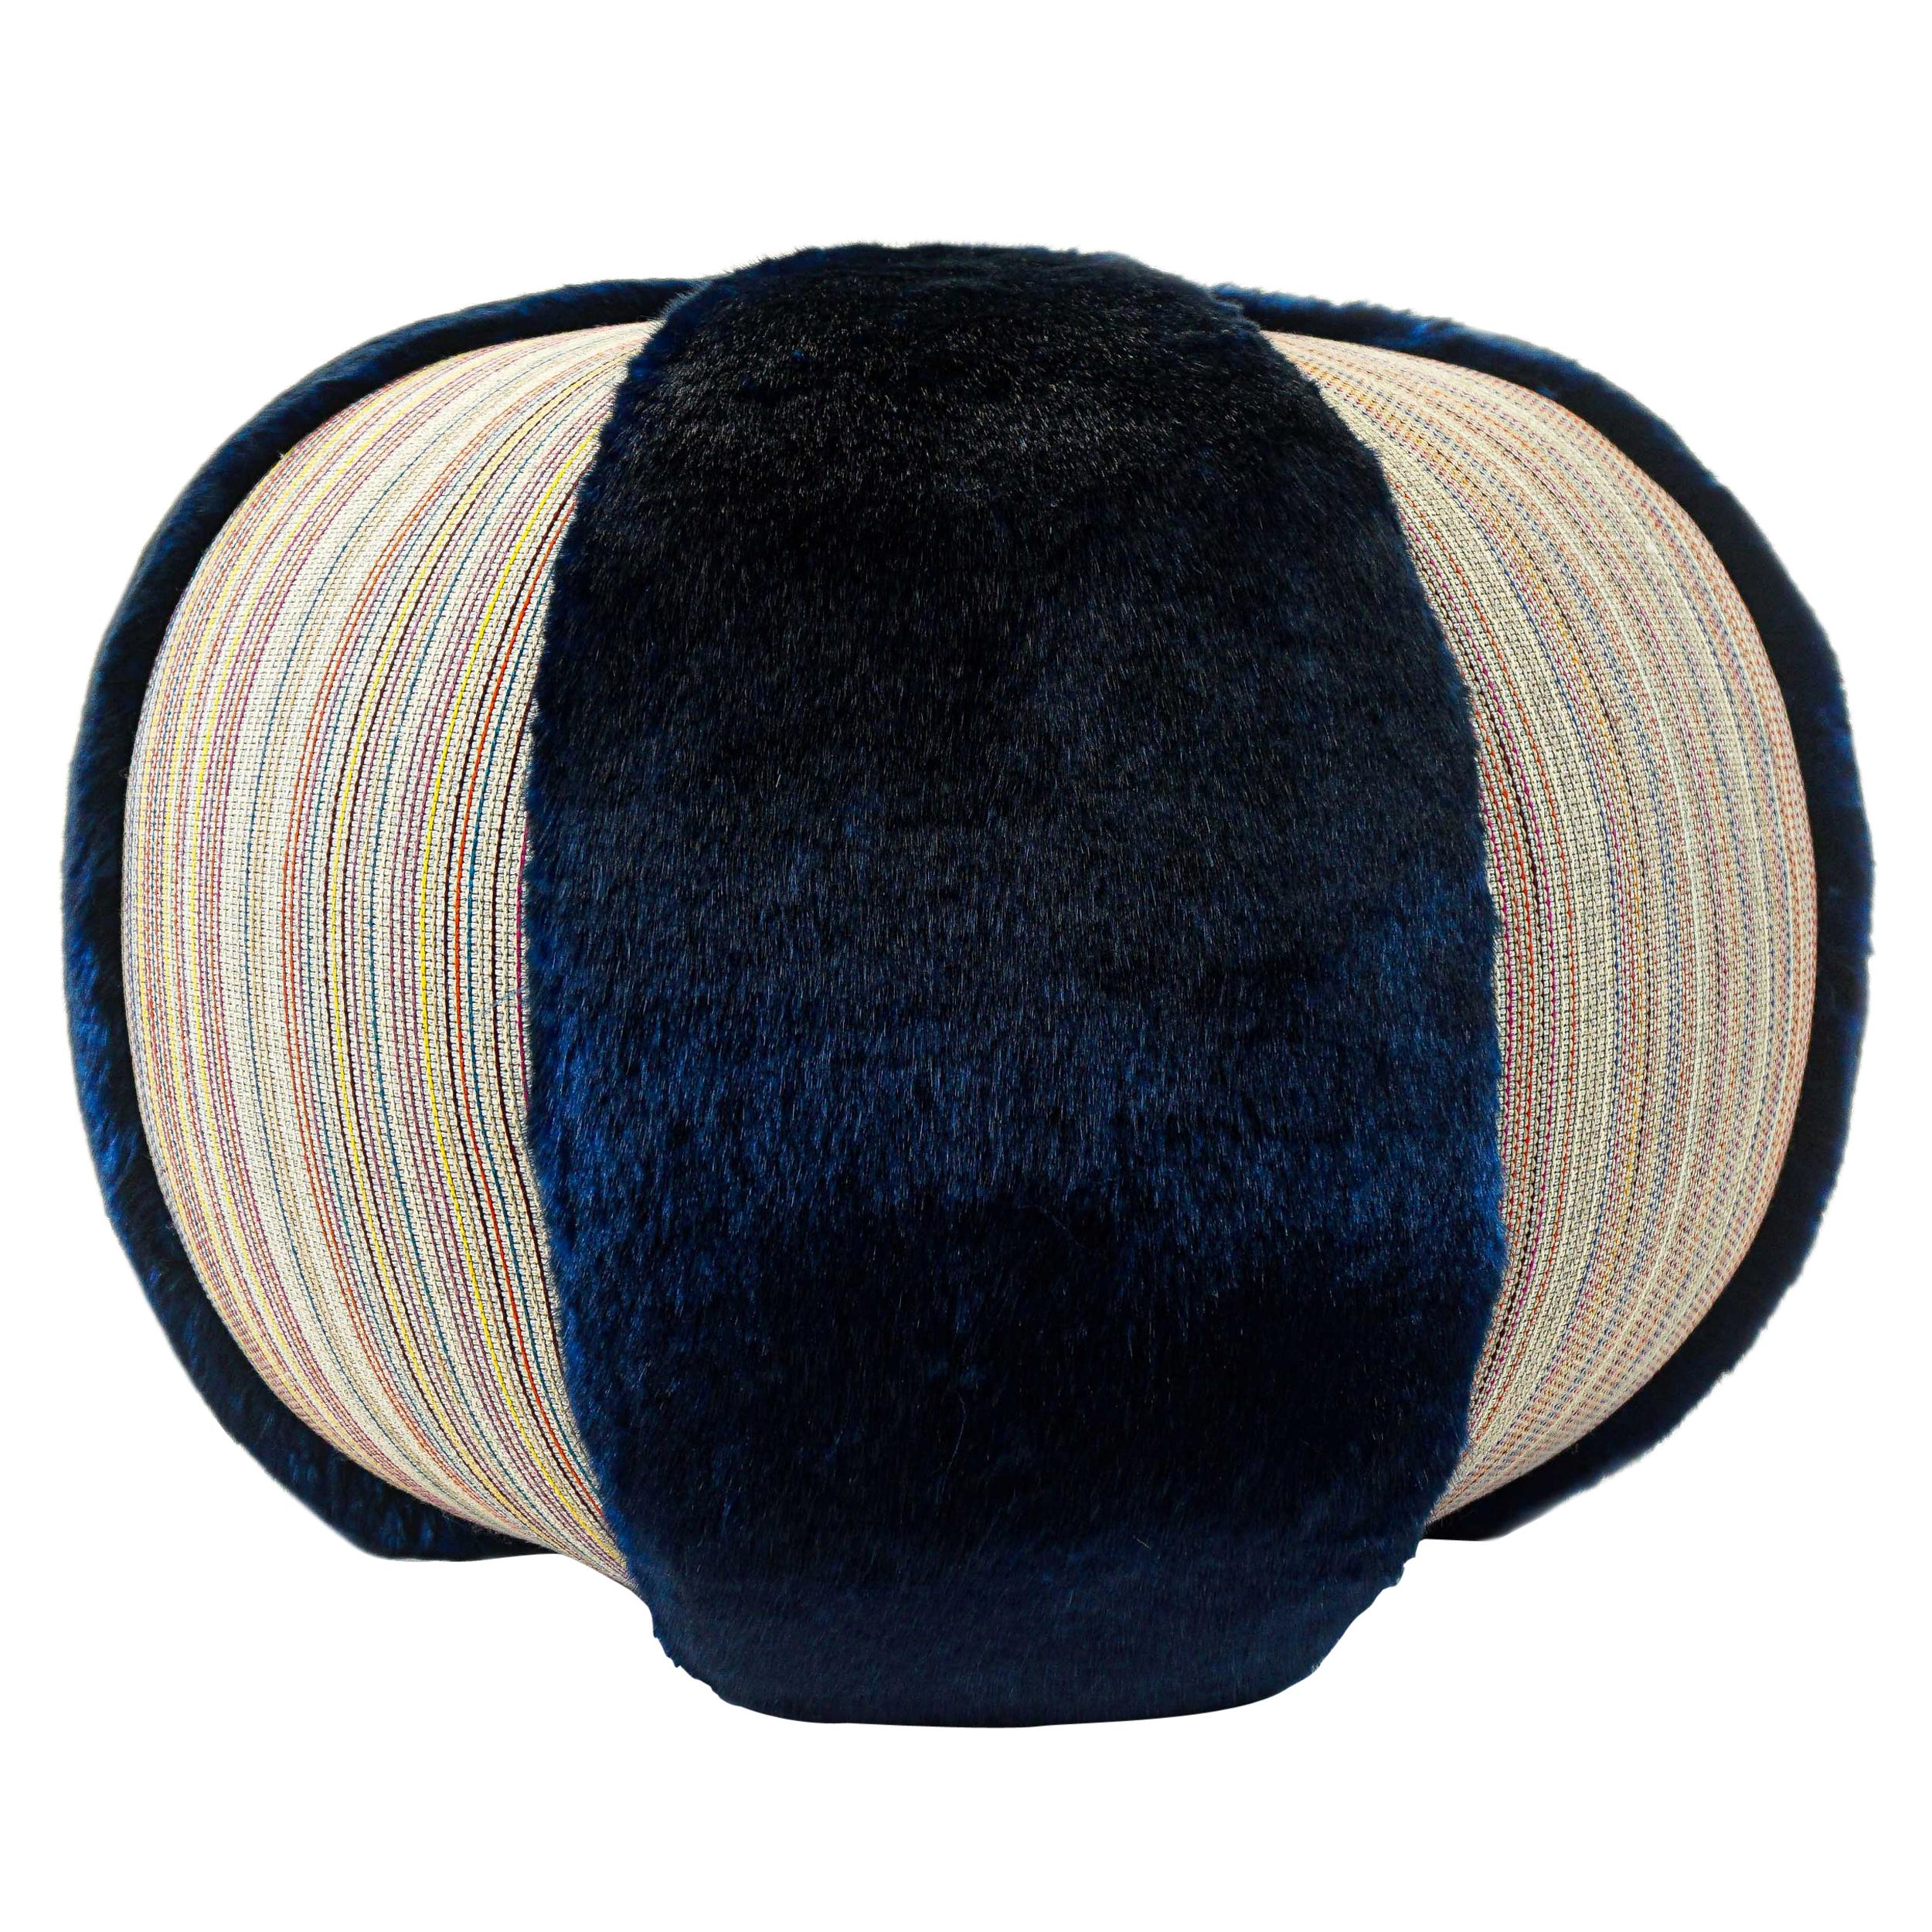 Colorful Stripe Pouf/Ottoman with Vibrant Blue Faux Fur For Sale